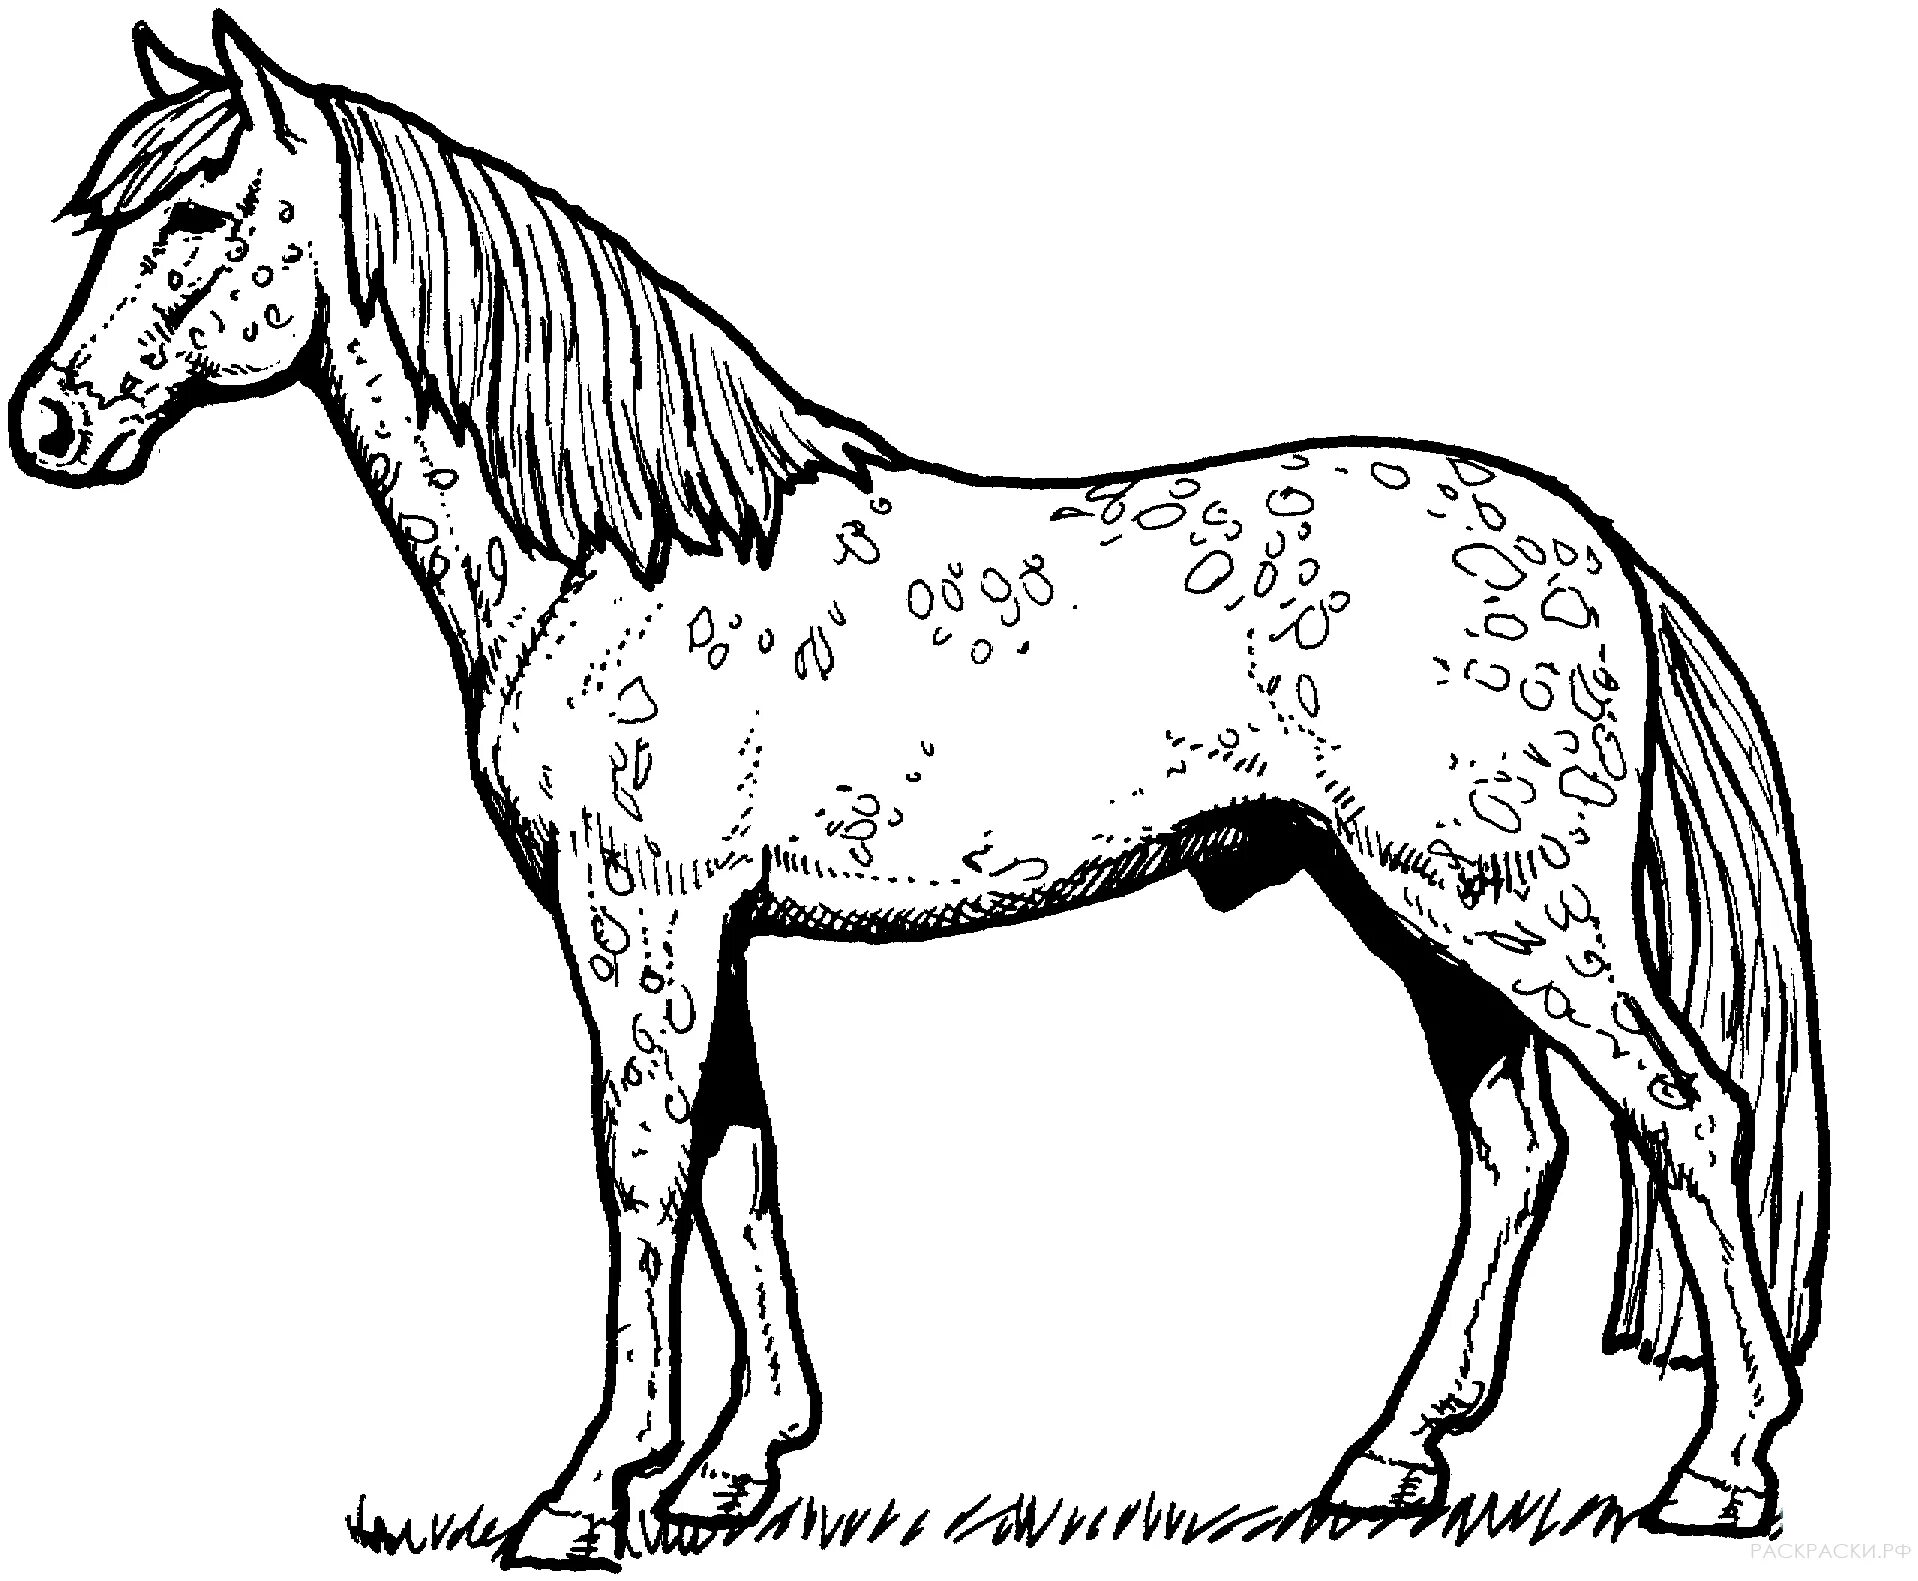 Раскрасить лошадку. Раскраска. Лошадка. Картинка лошадь раскраска. Лошадь раскраска для детей. Рисунок лошади для раскрашивания.